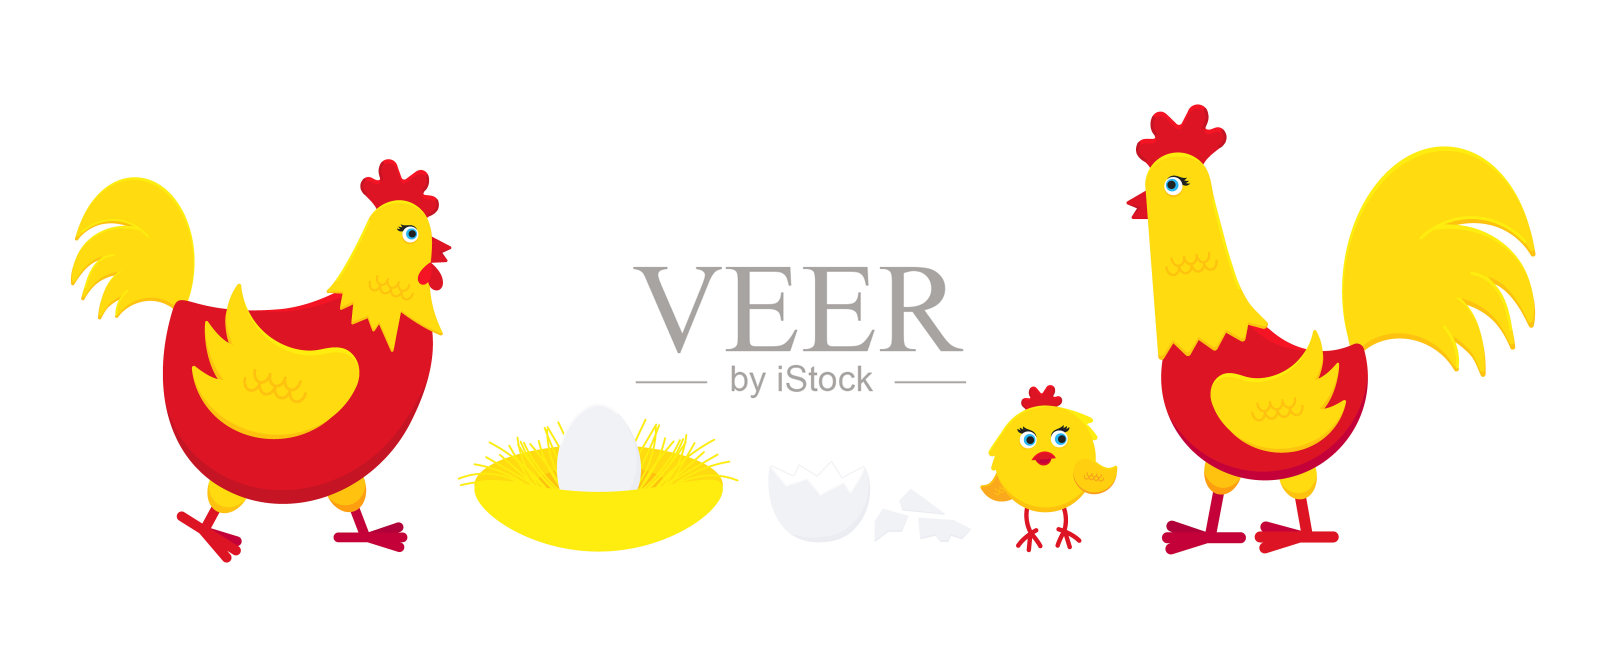 黄色和红色的鸡用破蛋、鸡窝、公鸡和小鸡的平面风格设计矢量插图。养鸡家禽标志。隔离在白色背景上的家禽。插画图片素材